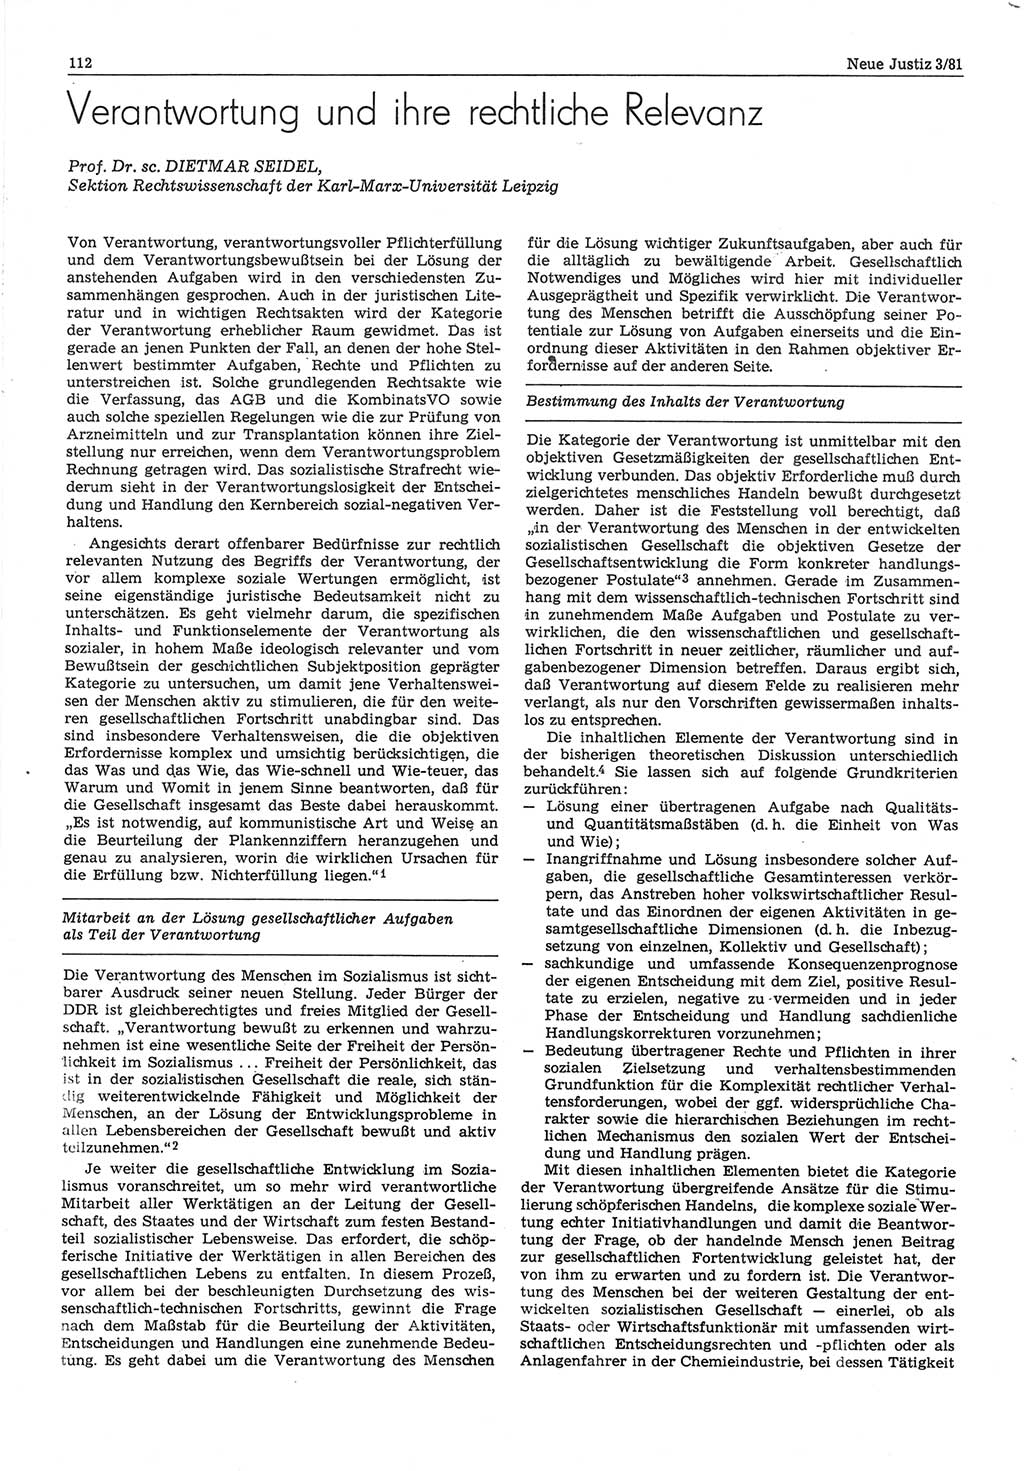 Neue Justiz (NJ), Zeitschrift für sozialistisches Recht und Gesetzlichkeit [Deutsche Demokratische Republik (DDR)], 35. Jahrgang 1981, Seite 112 (NJ DDR 1981, S. 112)